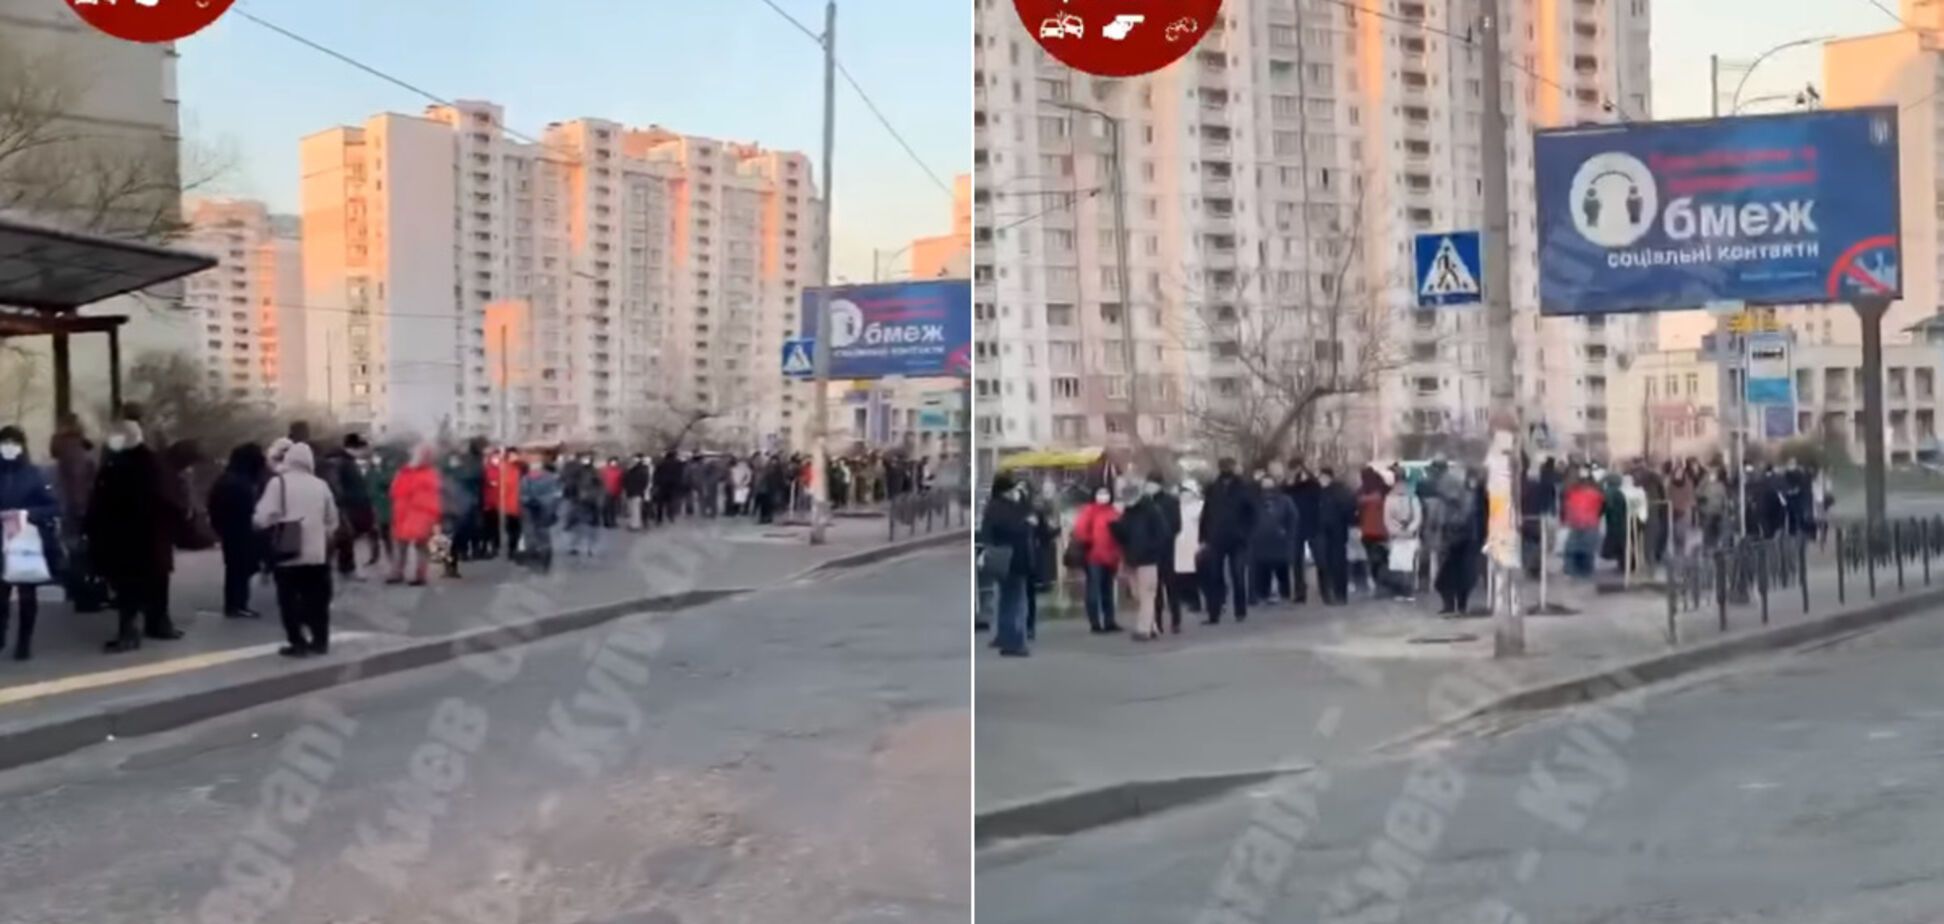 Величезна черга у транспорт під час карантину у Києві